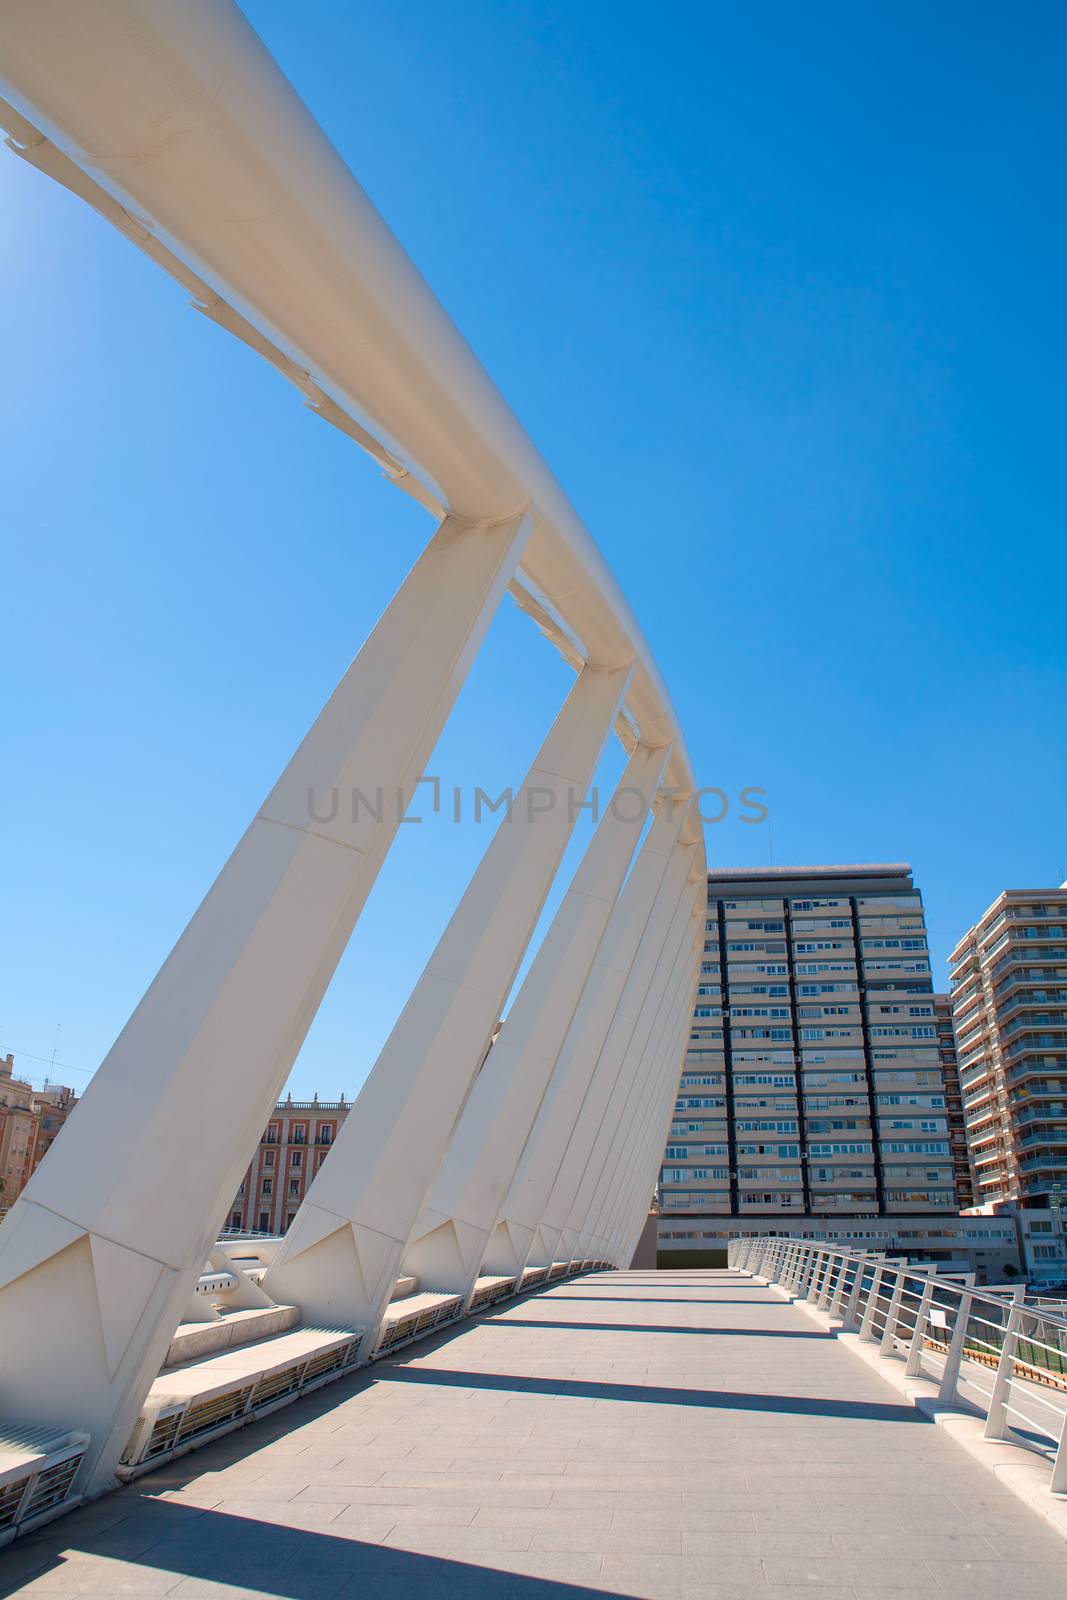 Valencia puente de Exposicion bridge in Alameda Spain